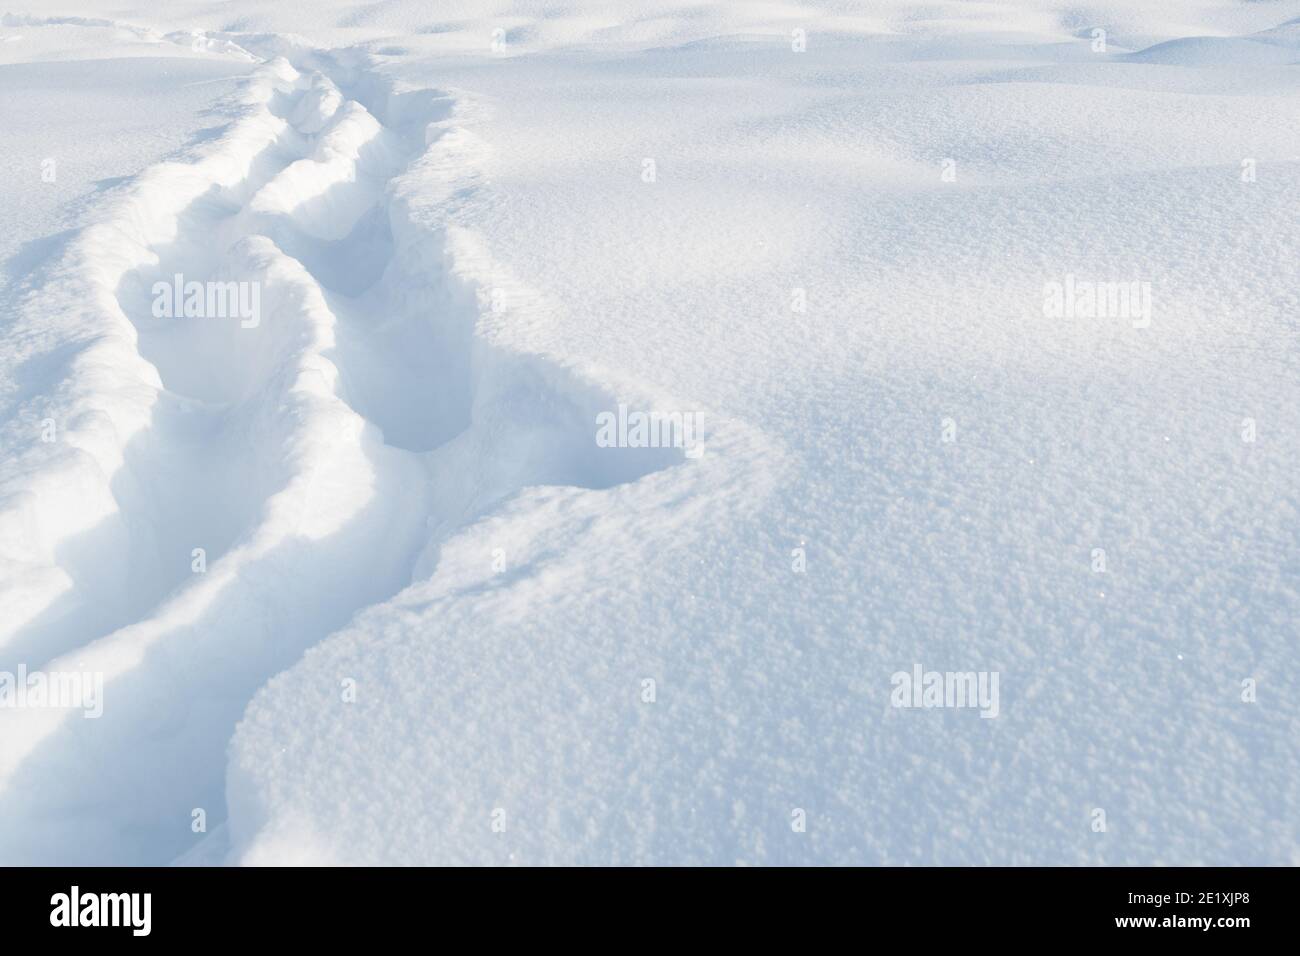 Percorso stretto attraverso la neve profonda in campo di neve Foto Stock